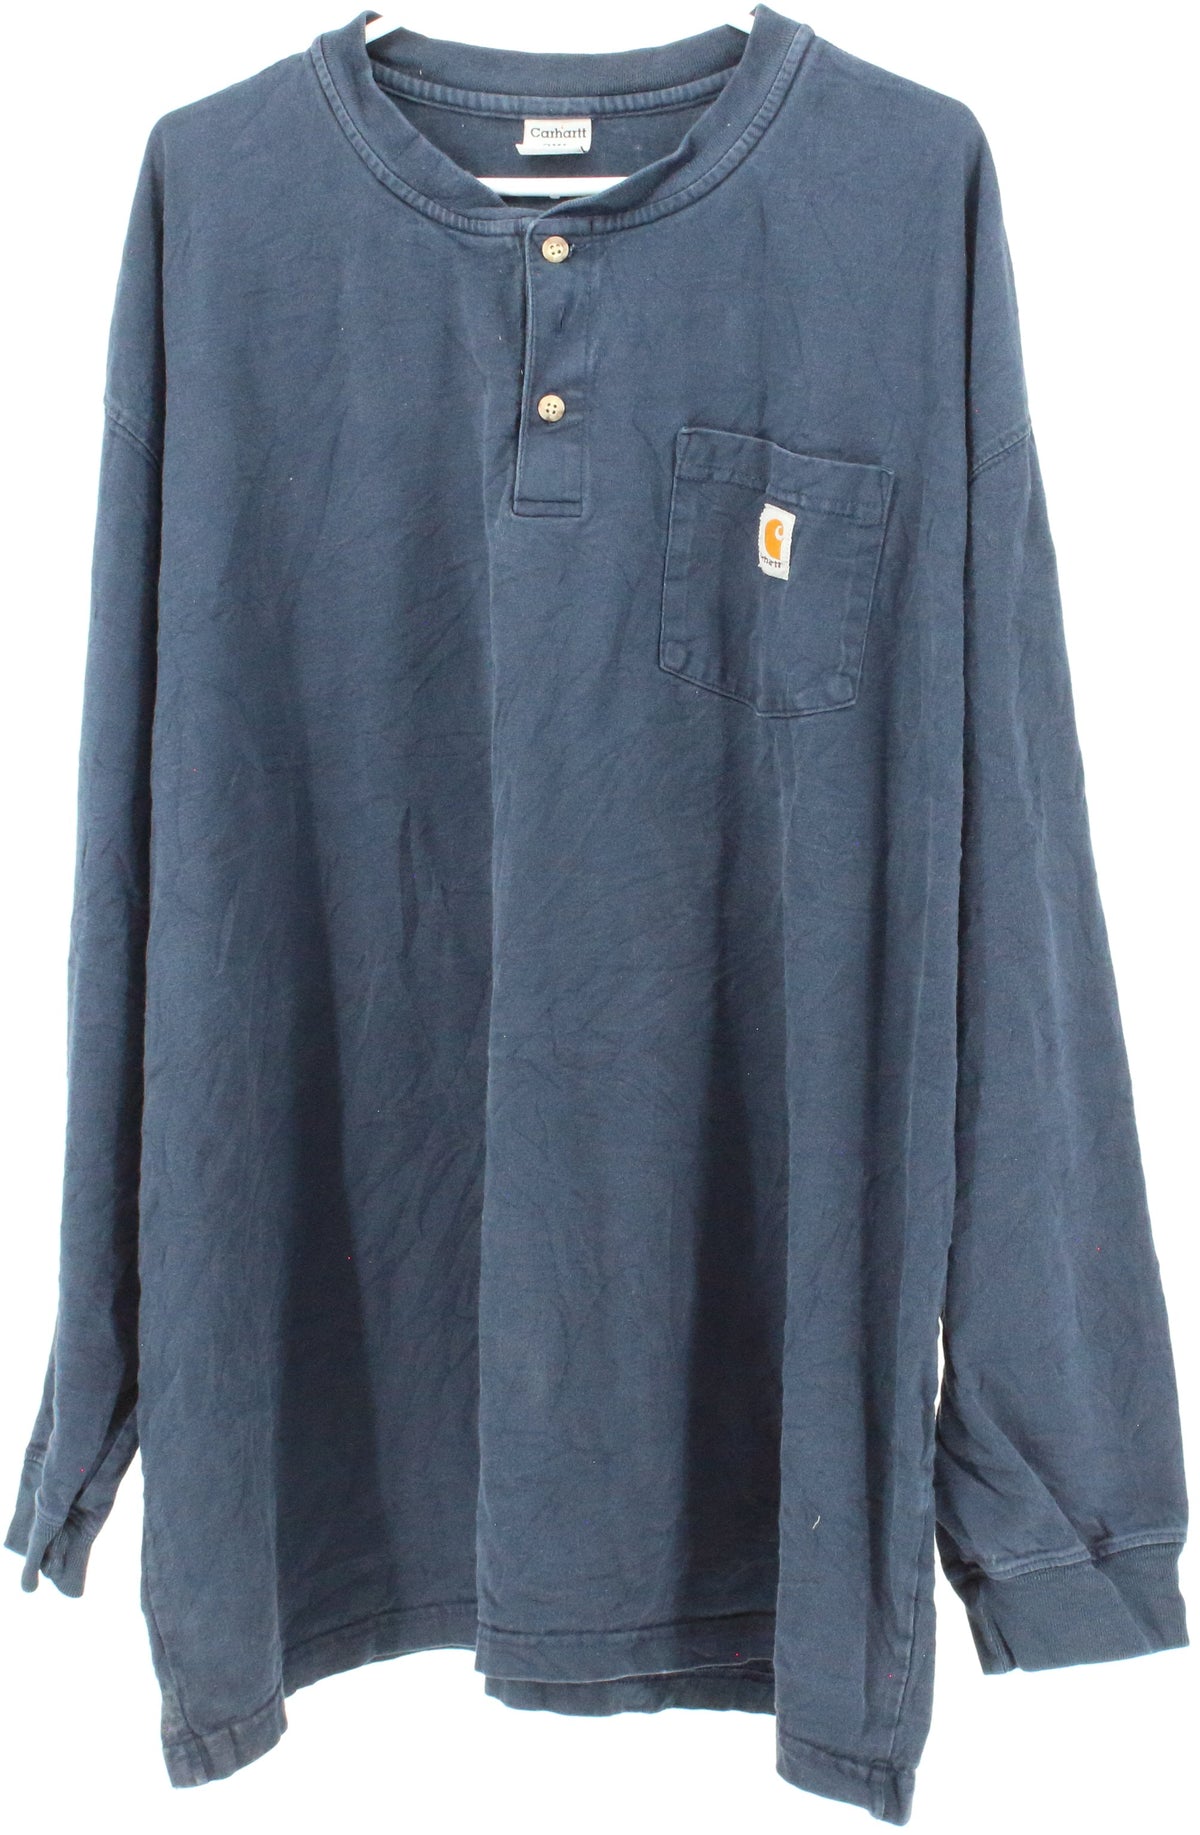 Carhartt Navy Blue Front Buttons Long Sleeve T-Shirt